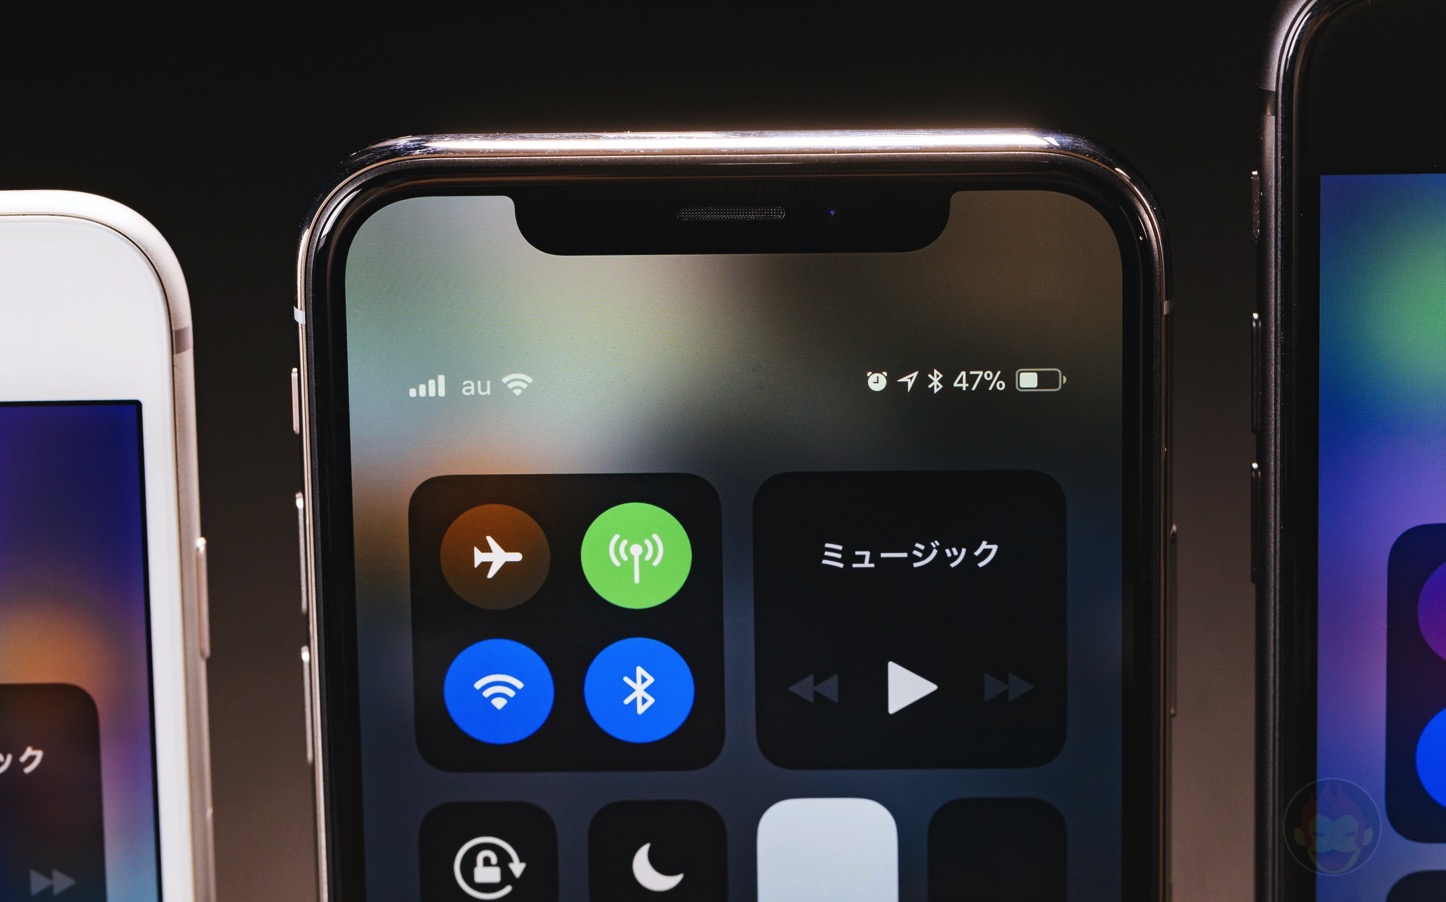 iPhoneX-Control-Center-Battery-01.jpg